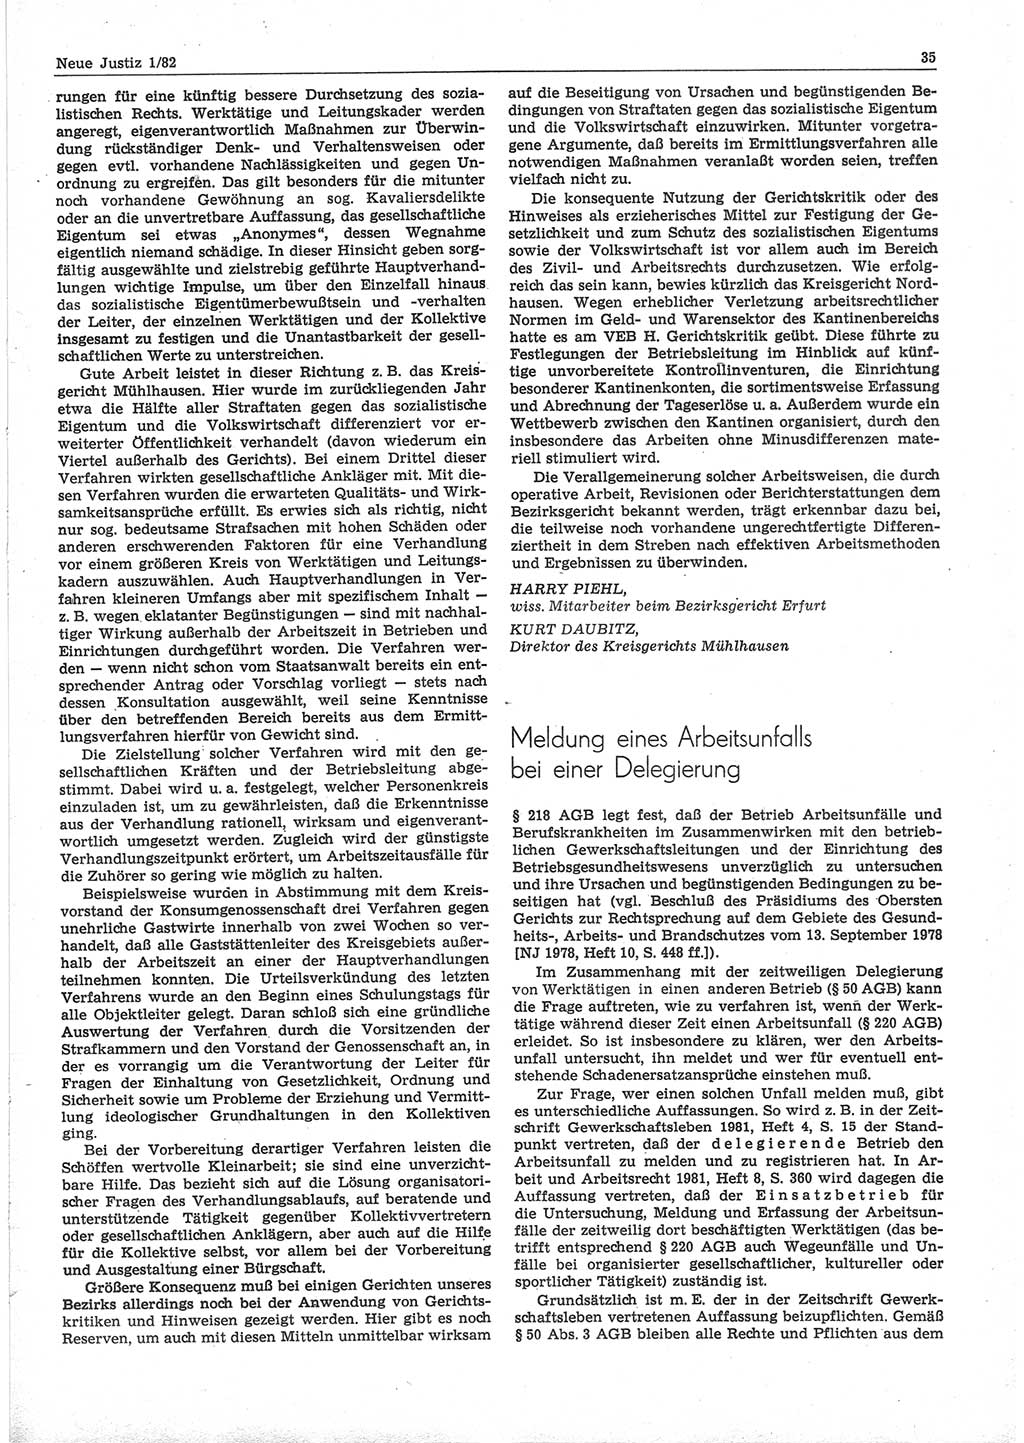 Neue Justiz (NJ), Zeitschrift für sozialistisches Recht und Gesetzlichkeit [Deutsche Demokratische Republik (DDR)], 36. Jahrgang 1982, Seite 35 (NJ DDR 1982, S. 35)